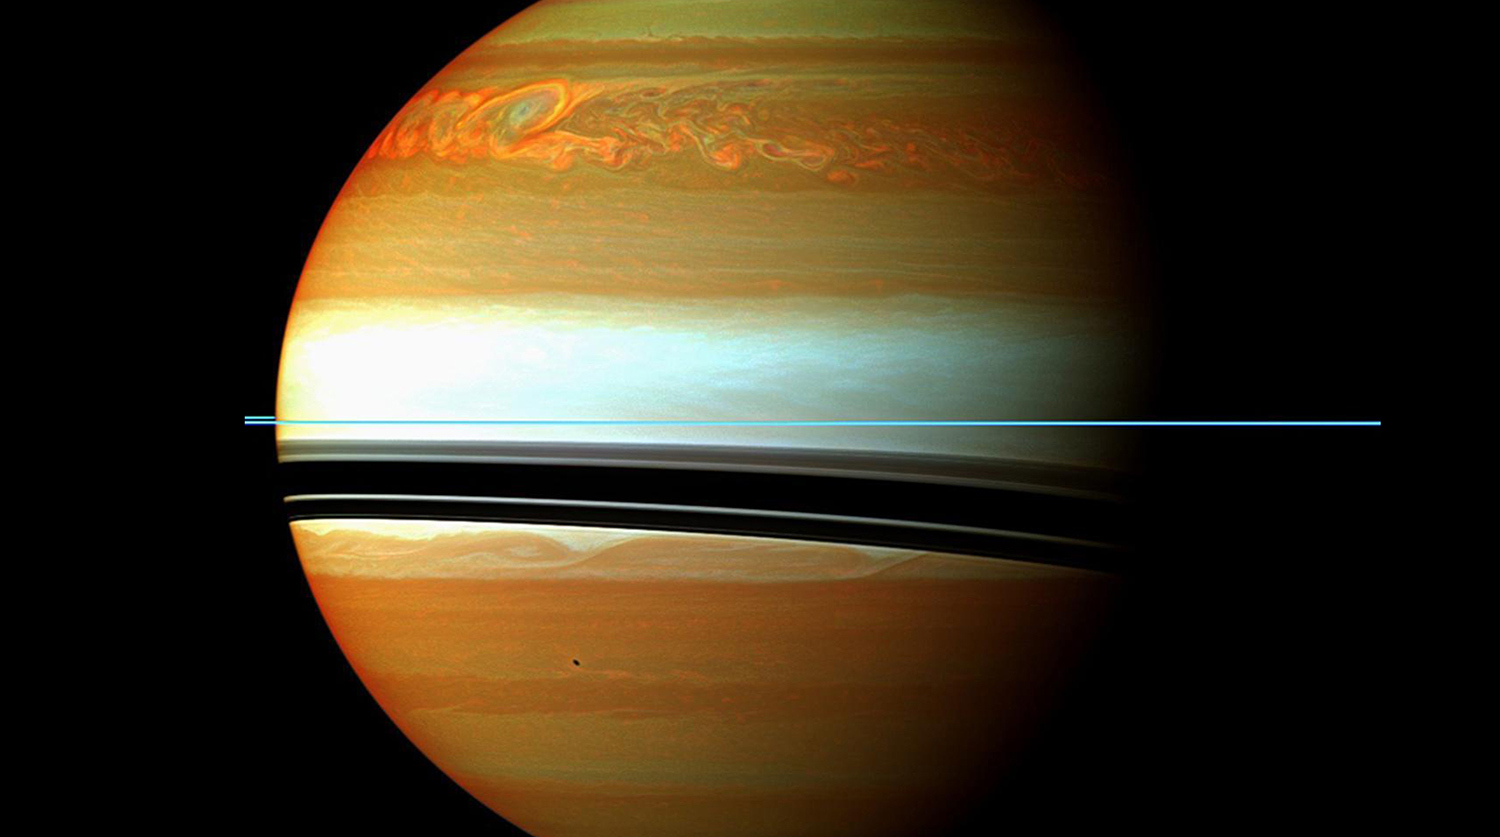 Лучшие снимки Cassini за 20 лет